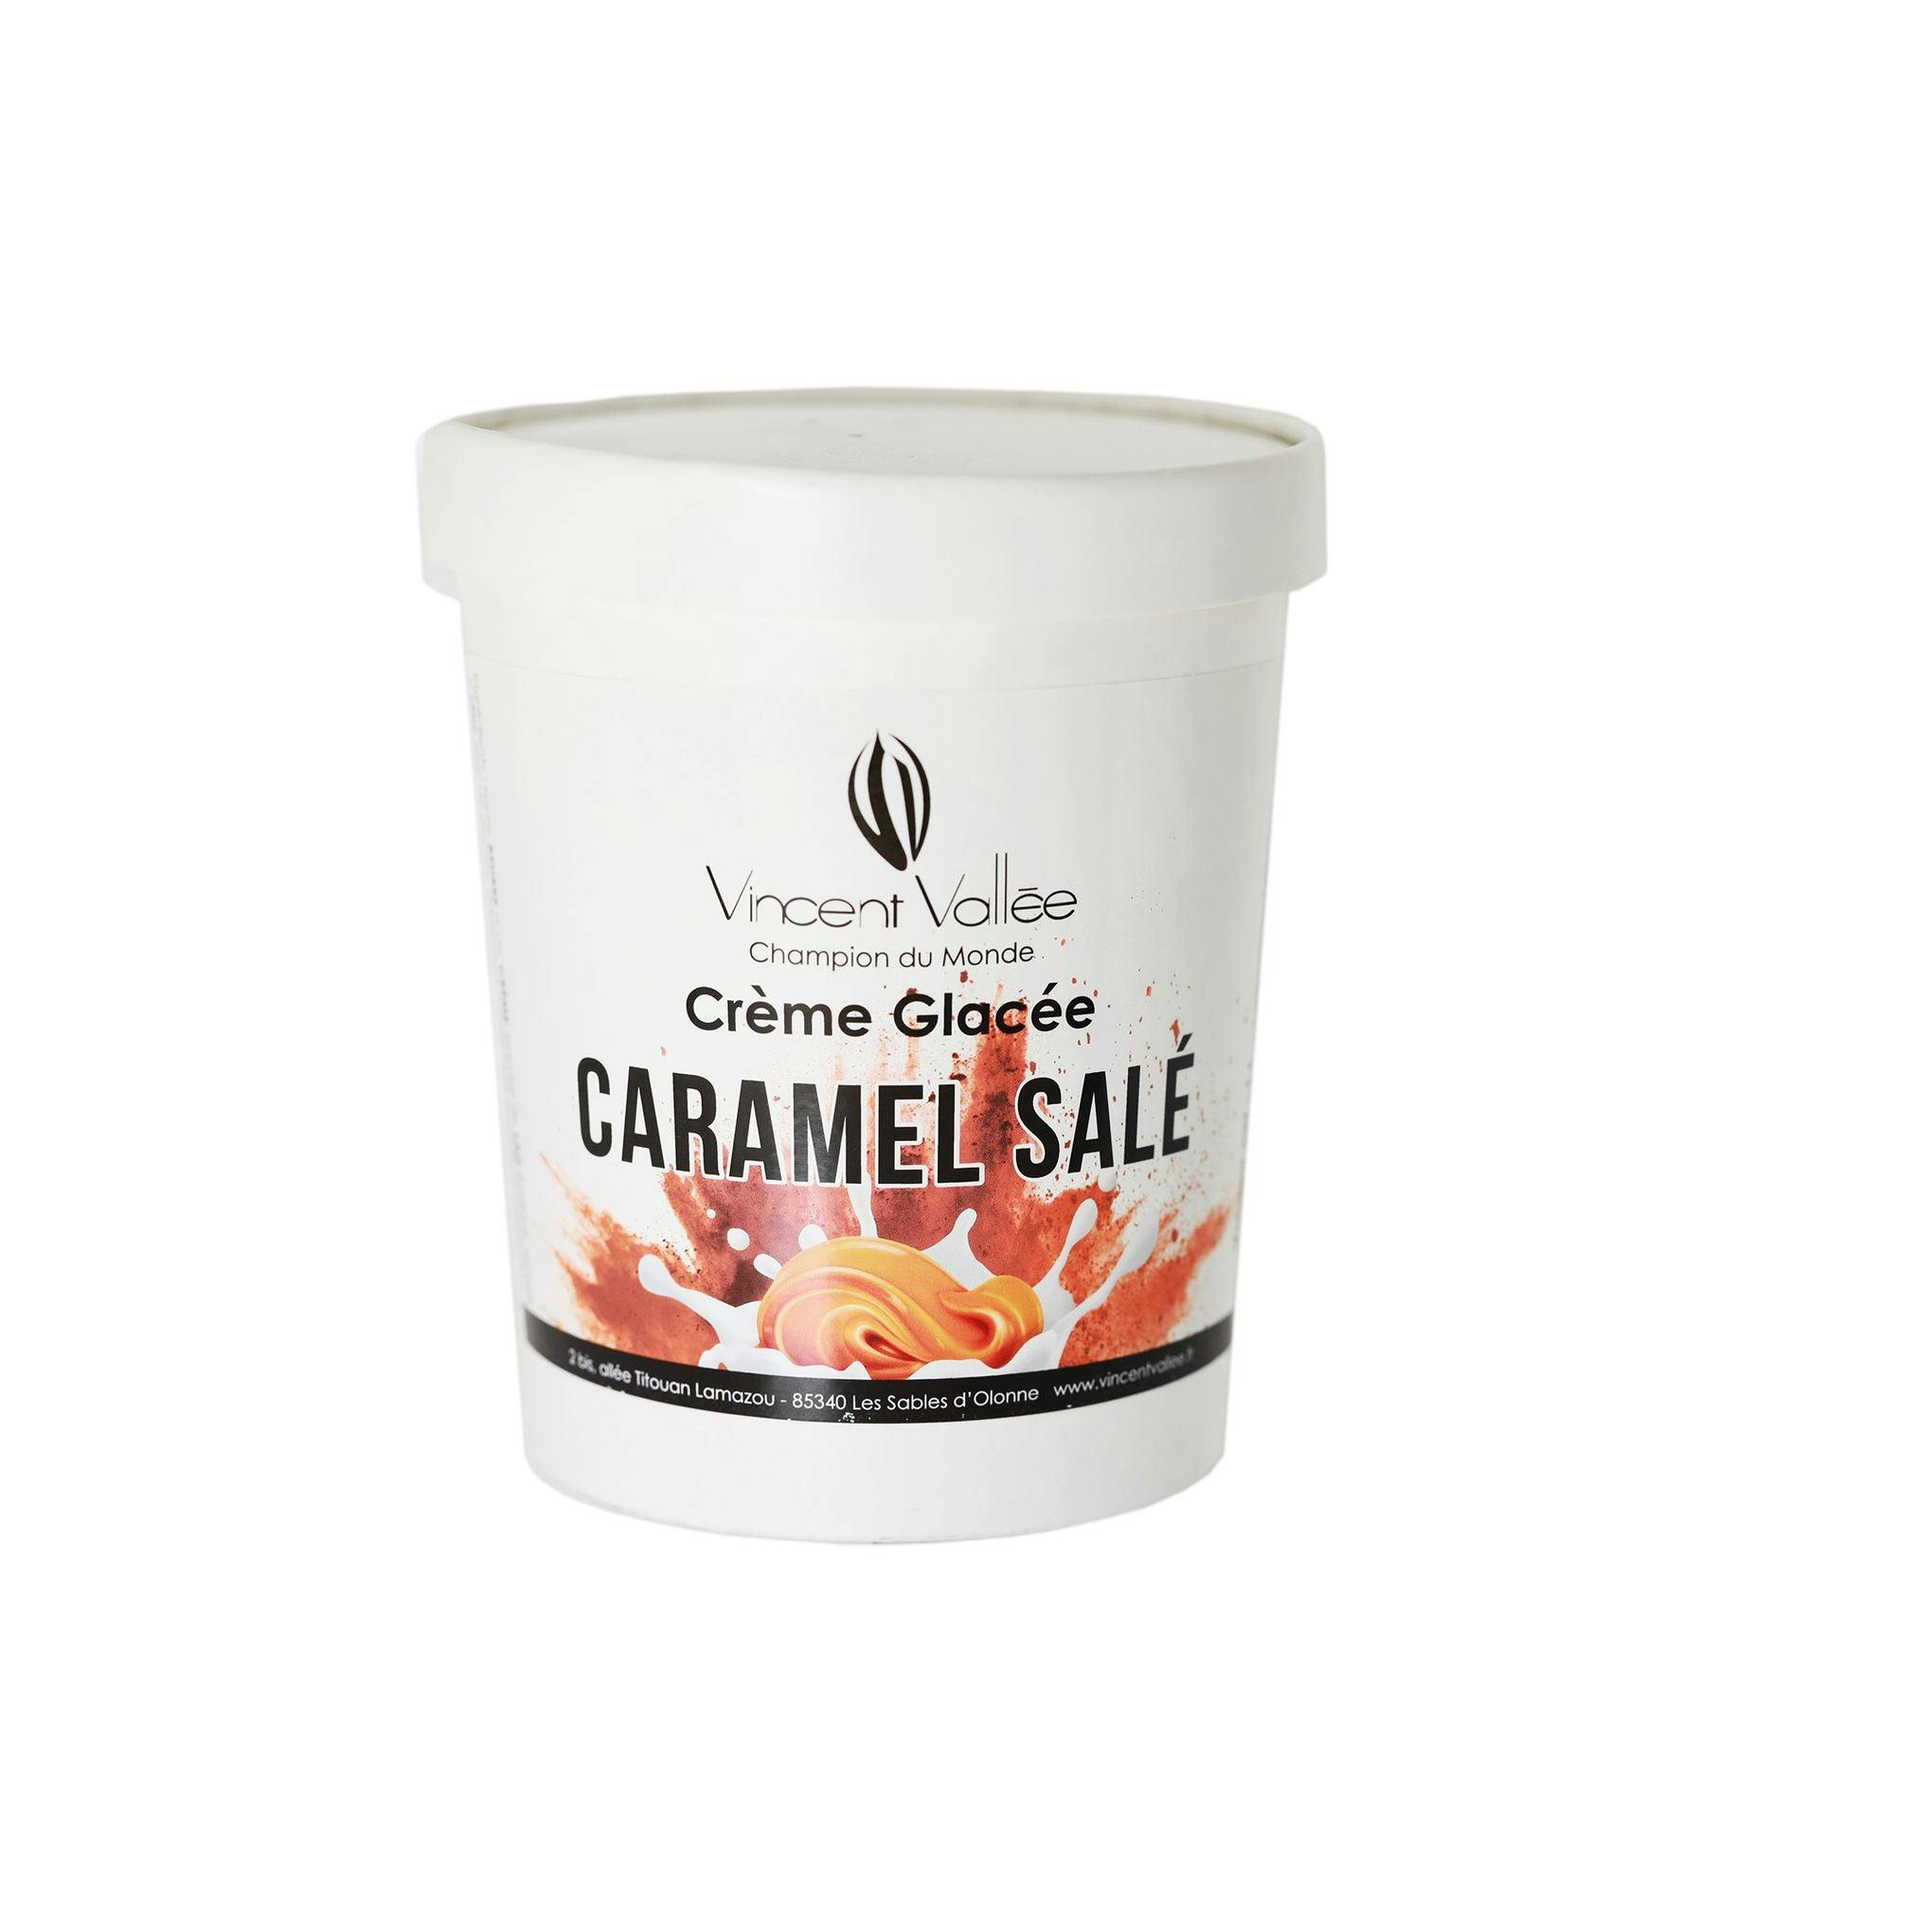 Crème glacée Caramel salé - Vincent Vallée chocolatier champion du monde